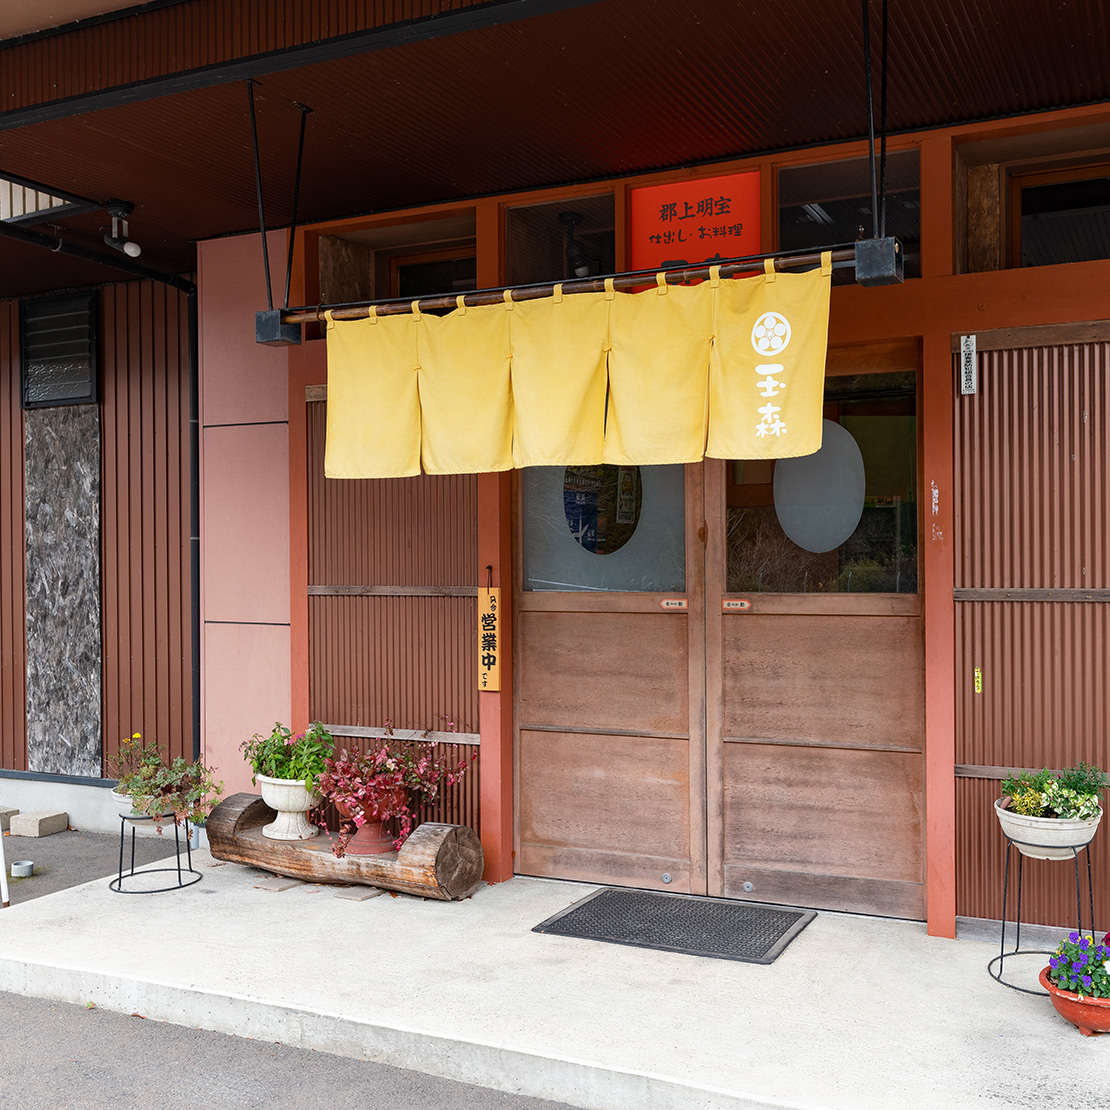 Meiho Restaurant Shidashi Tamamori